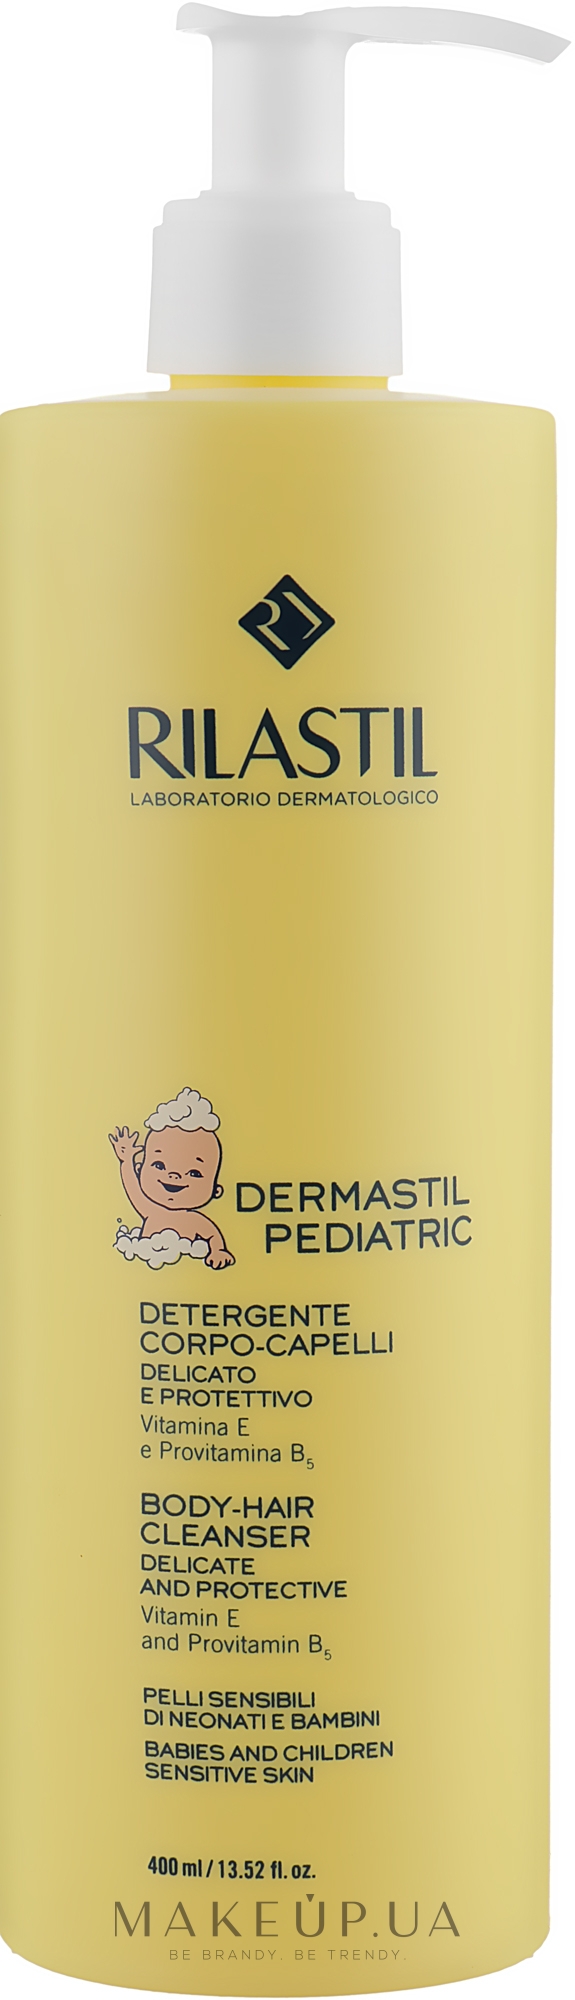 Детский очищающий гель для волос и тела - Rilastil Dermastil Pediatric Body-Hair Cleanser  — фото 400ml